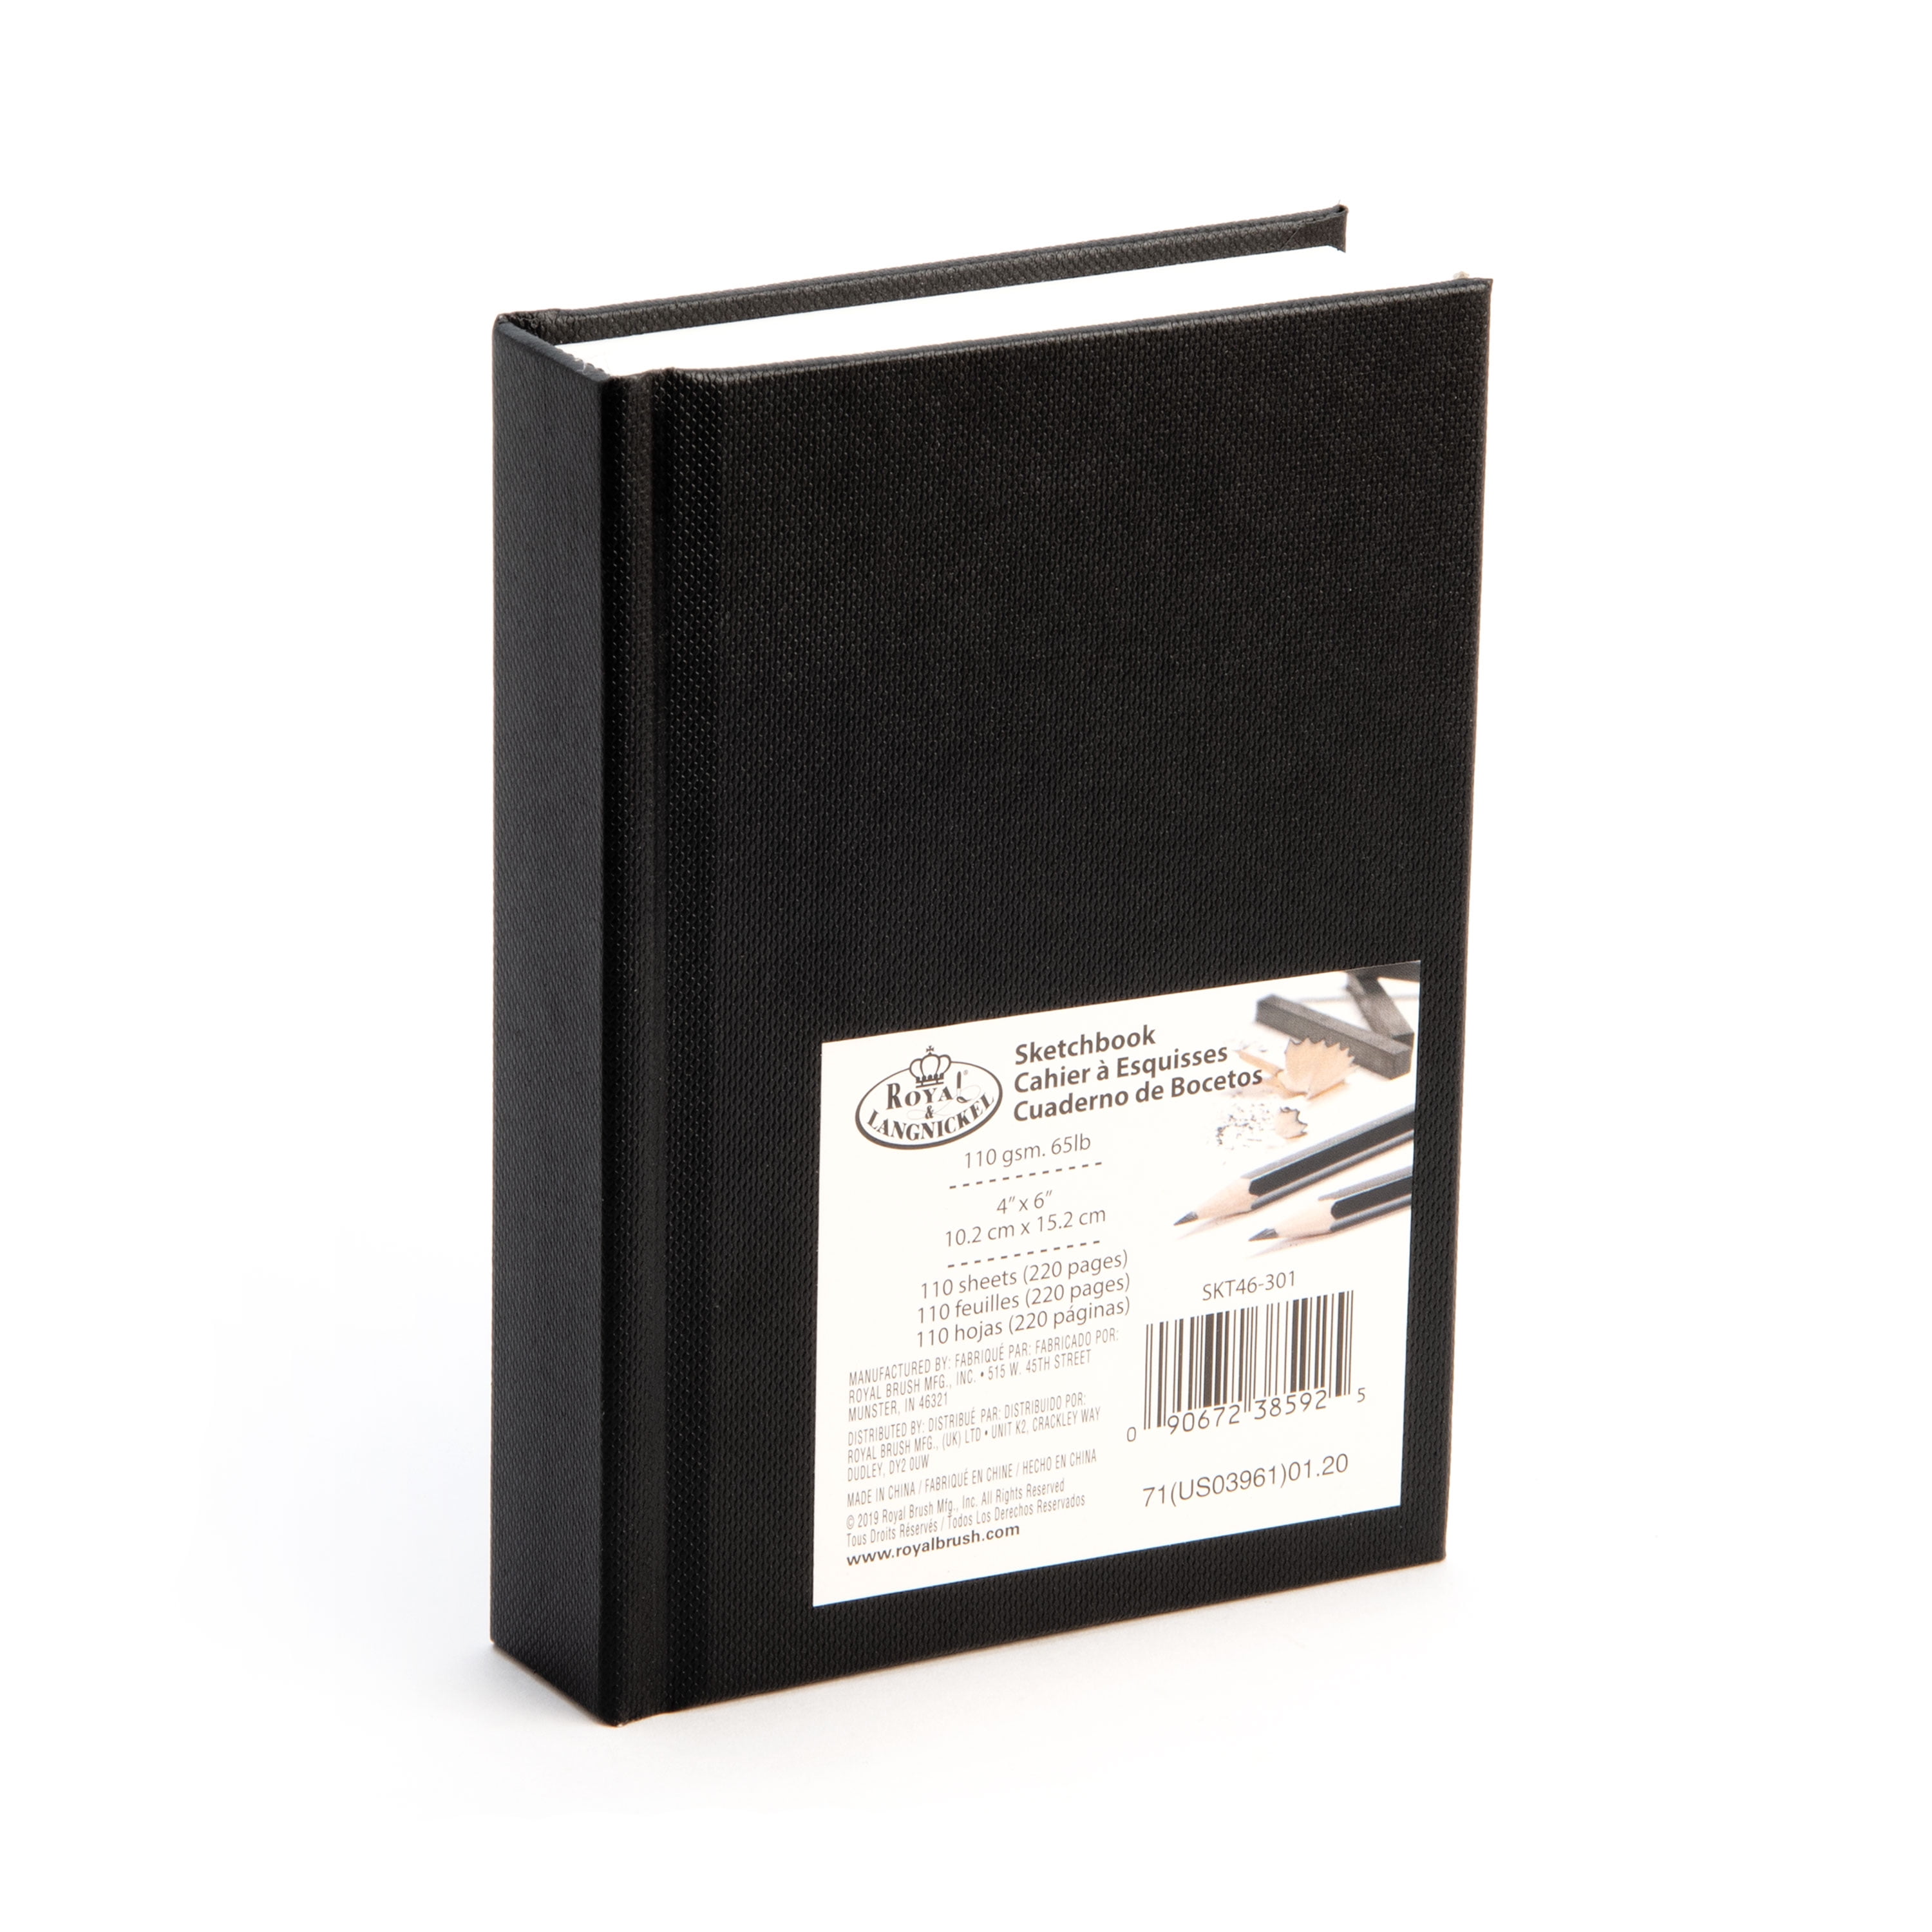 A6 Casebound Sketch Book Premium 110gsm White Cartridge Paper 